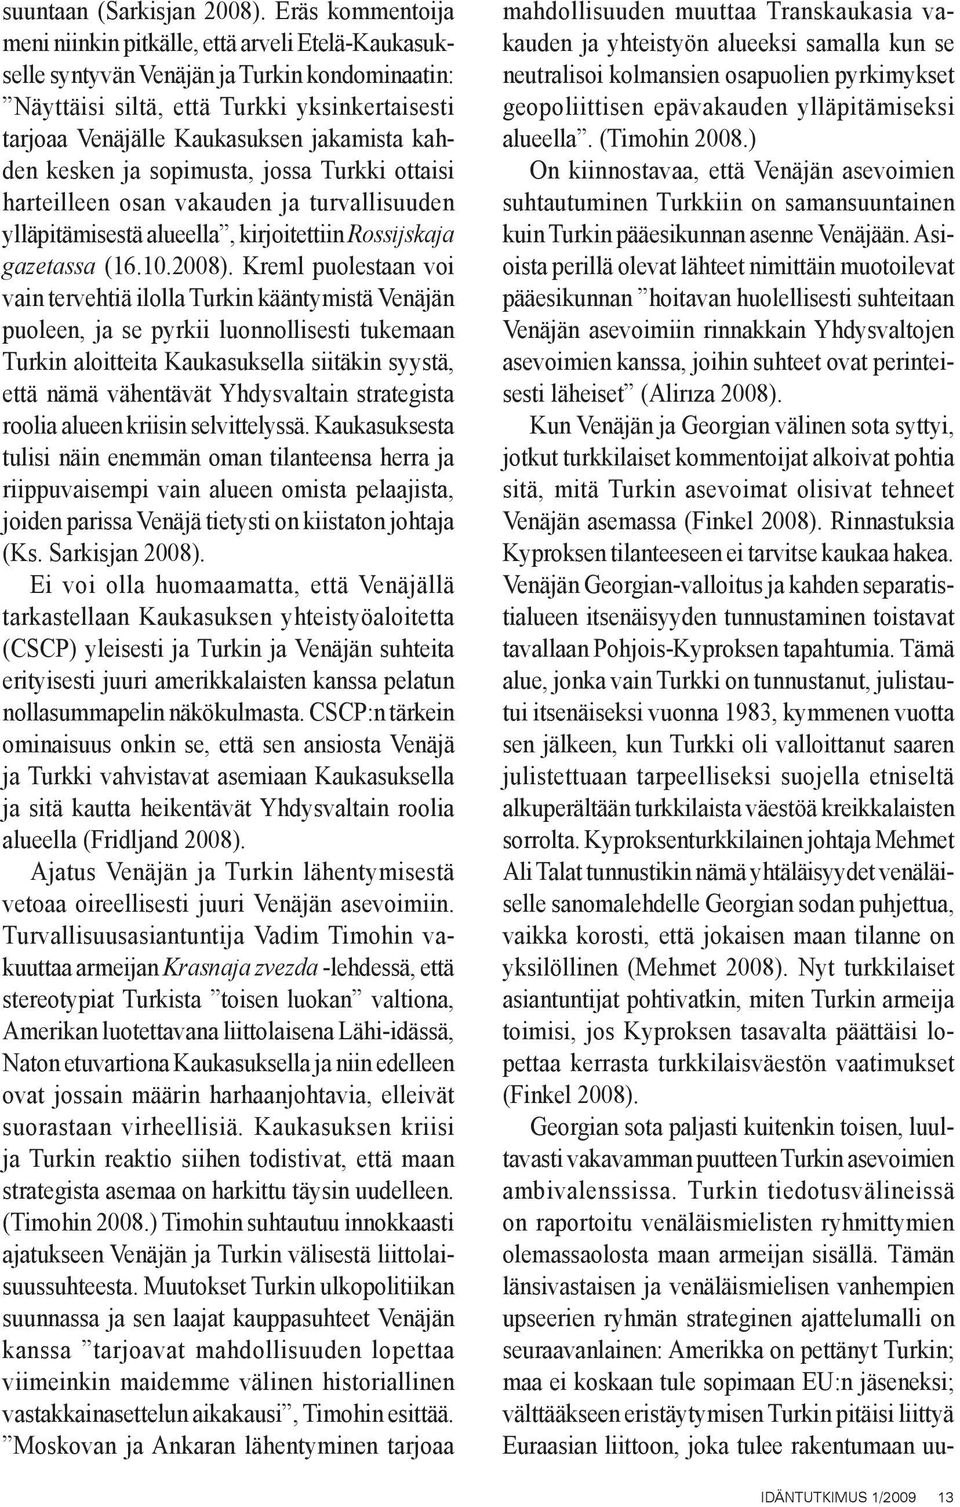 kahden kesken ja sopimusta, jossa Turkki ottaisi harteilleen osan vakauden ja turvallisuuden ylläpitämisestä alueella, kirjoitettiin Rossijskaja gazetassa (16.10.2008).